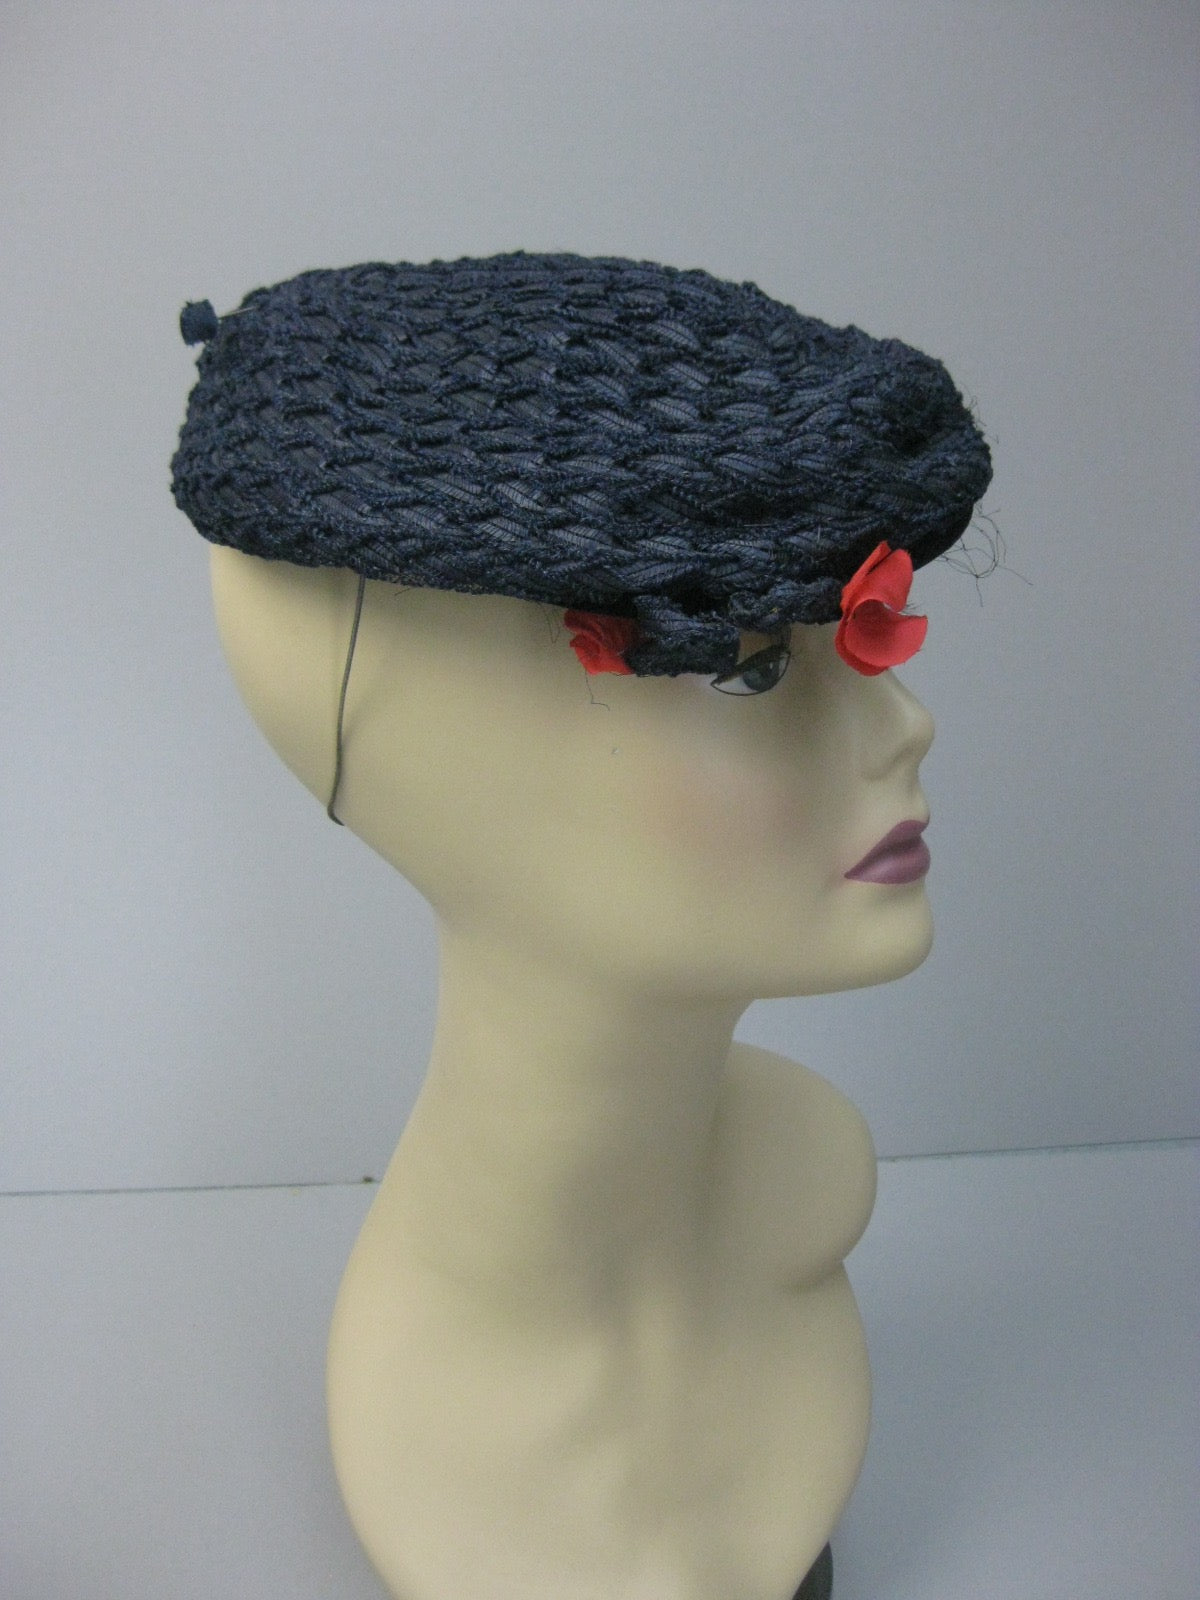 Vintage 40s Navy blue straw beret tilt hat